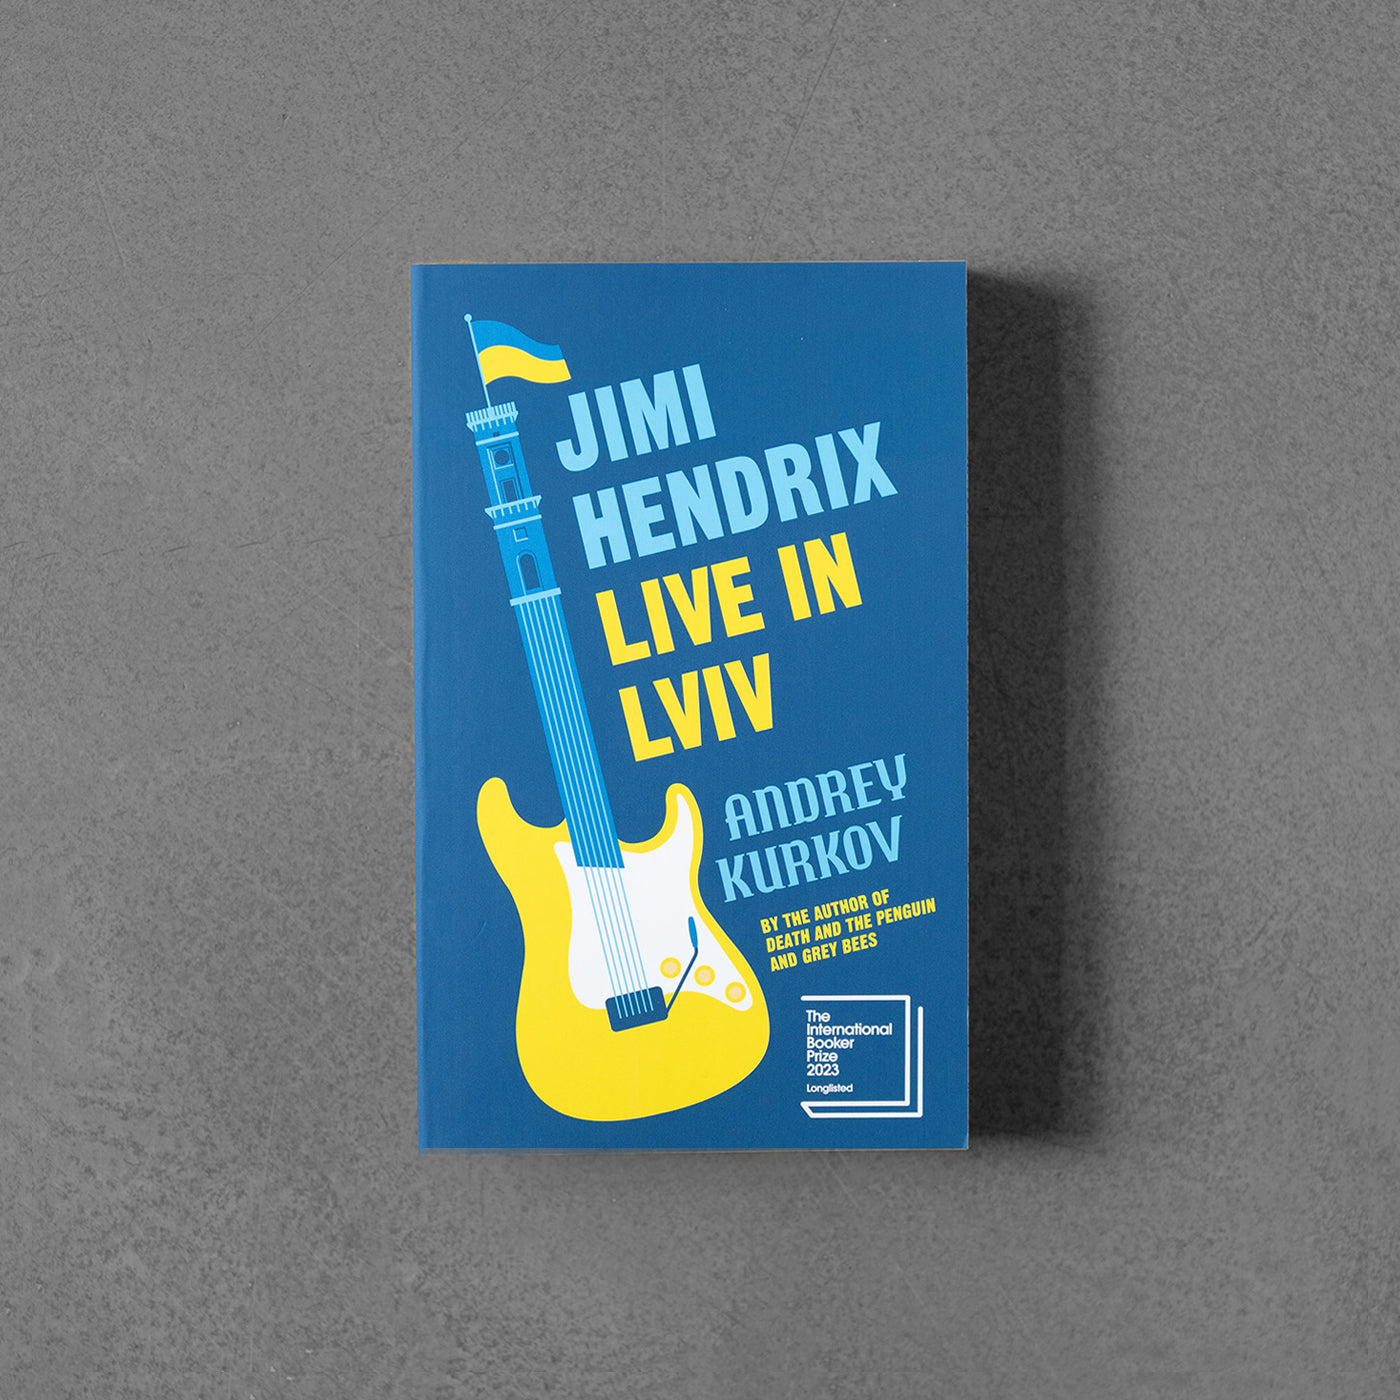 Jimi Hendrix Live in Lviv - Live in Lviv